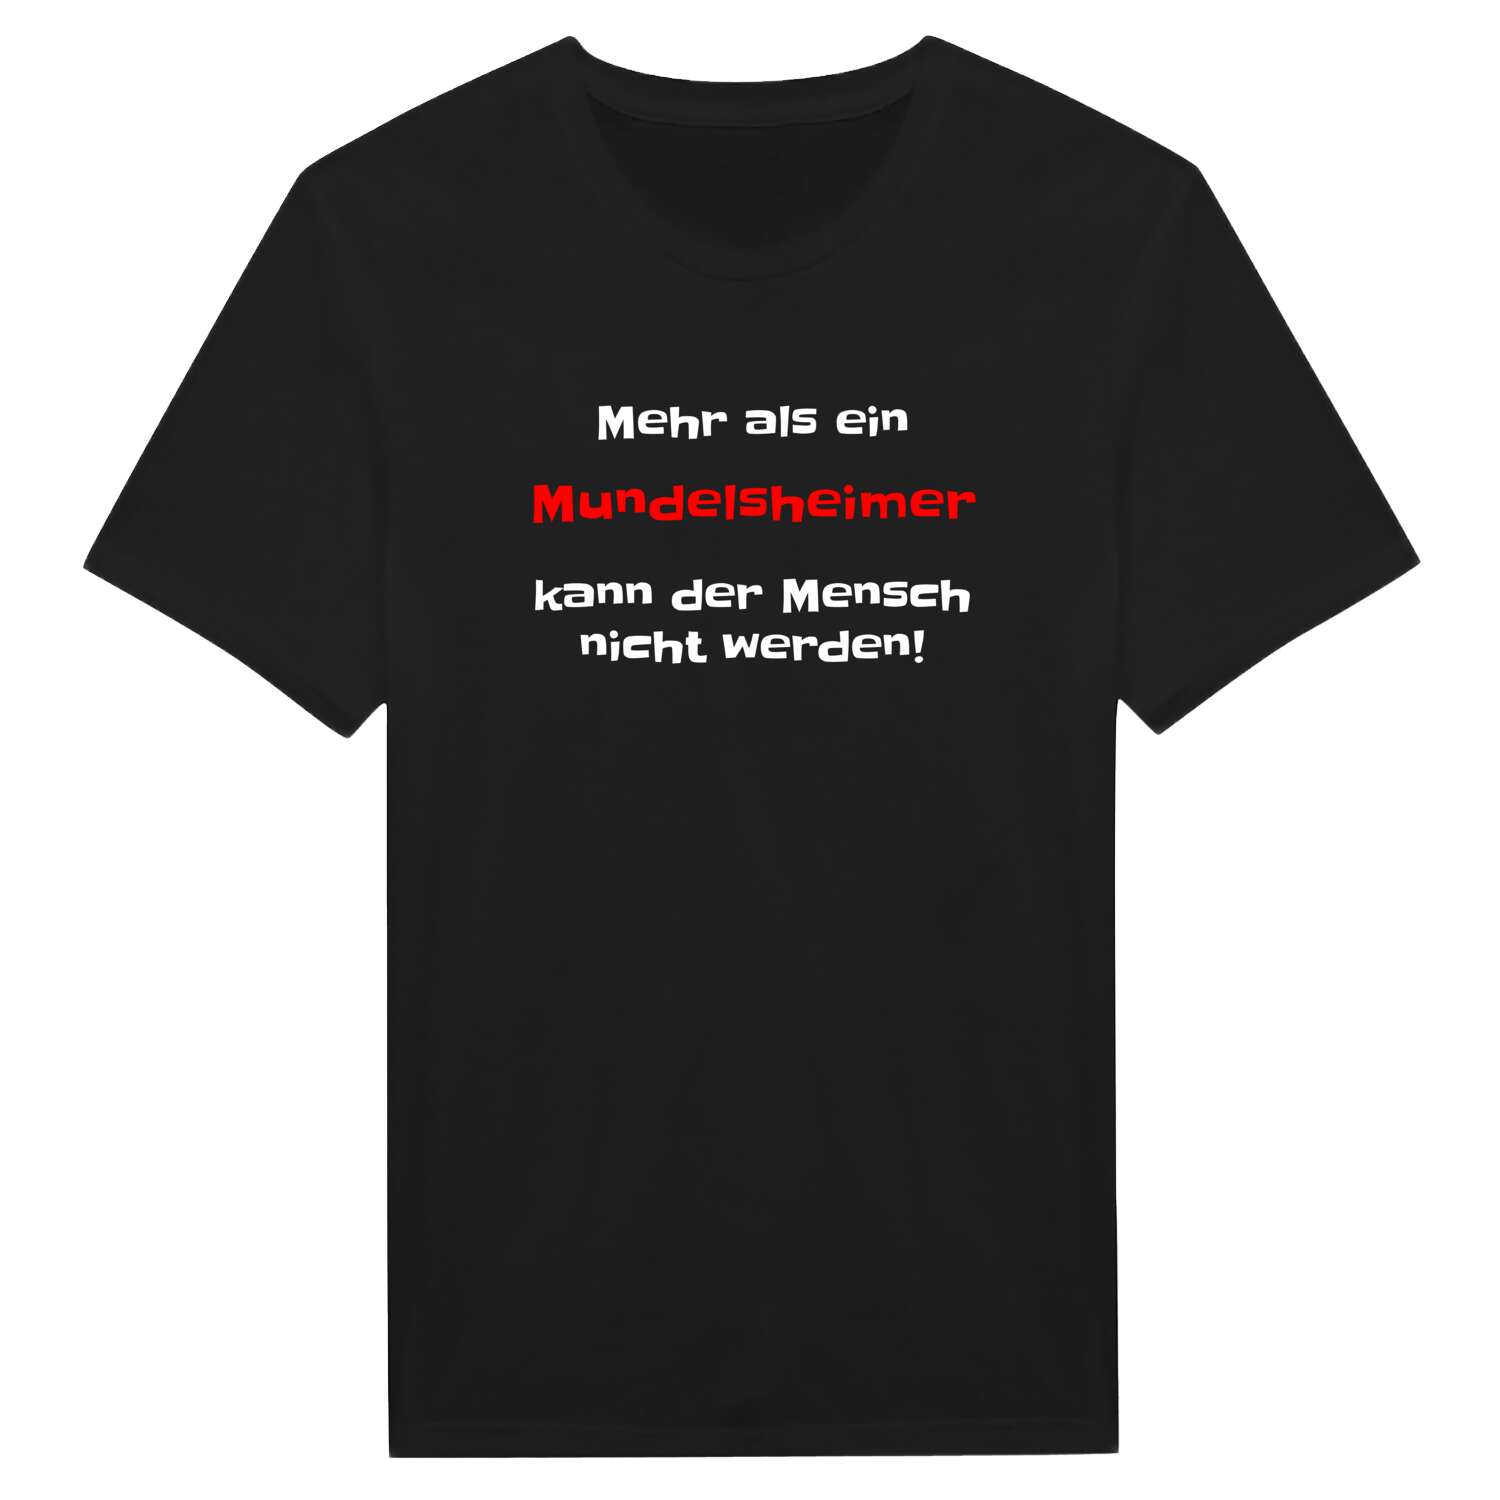 Mundelsheim T-Shirt »Mehr als ein«